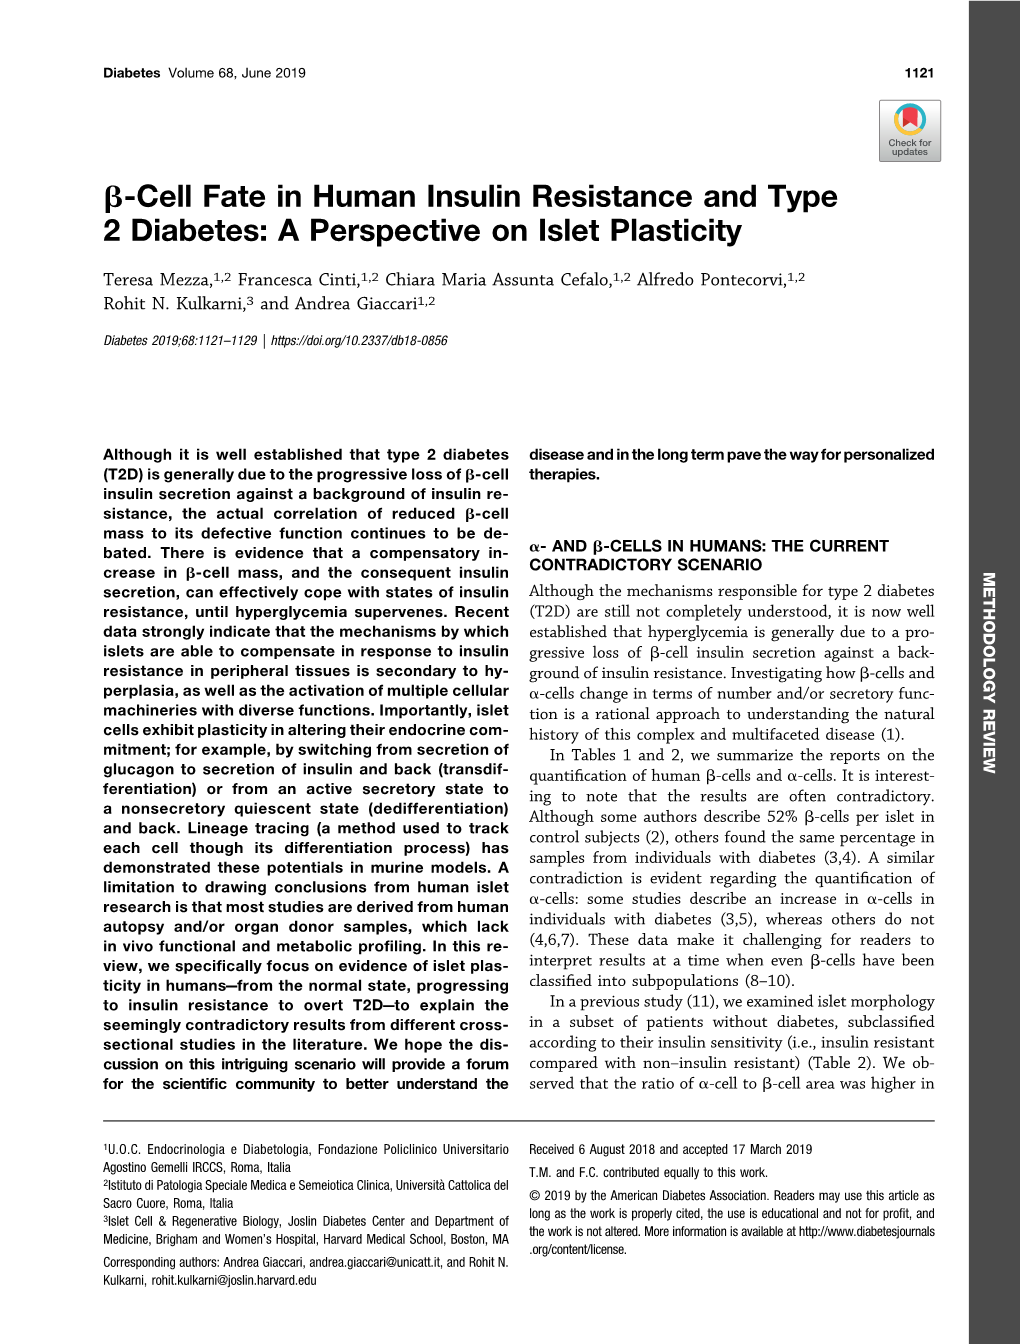 Β-Cell Fate in Human Insulin Resistance and Type 2 Diabetes: a Perspective on Islet Plasticity